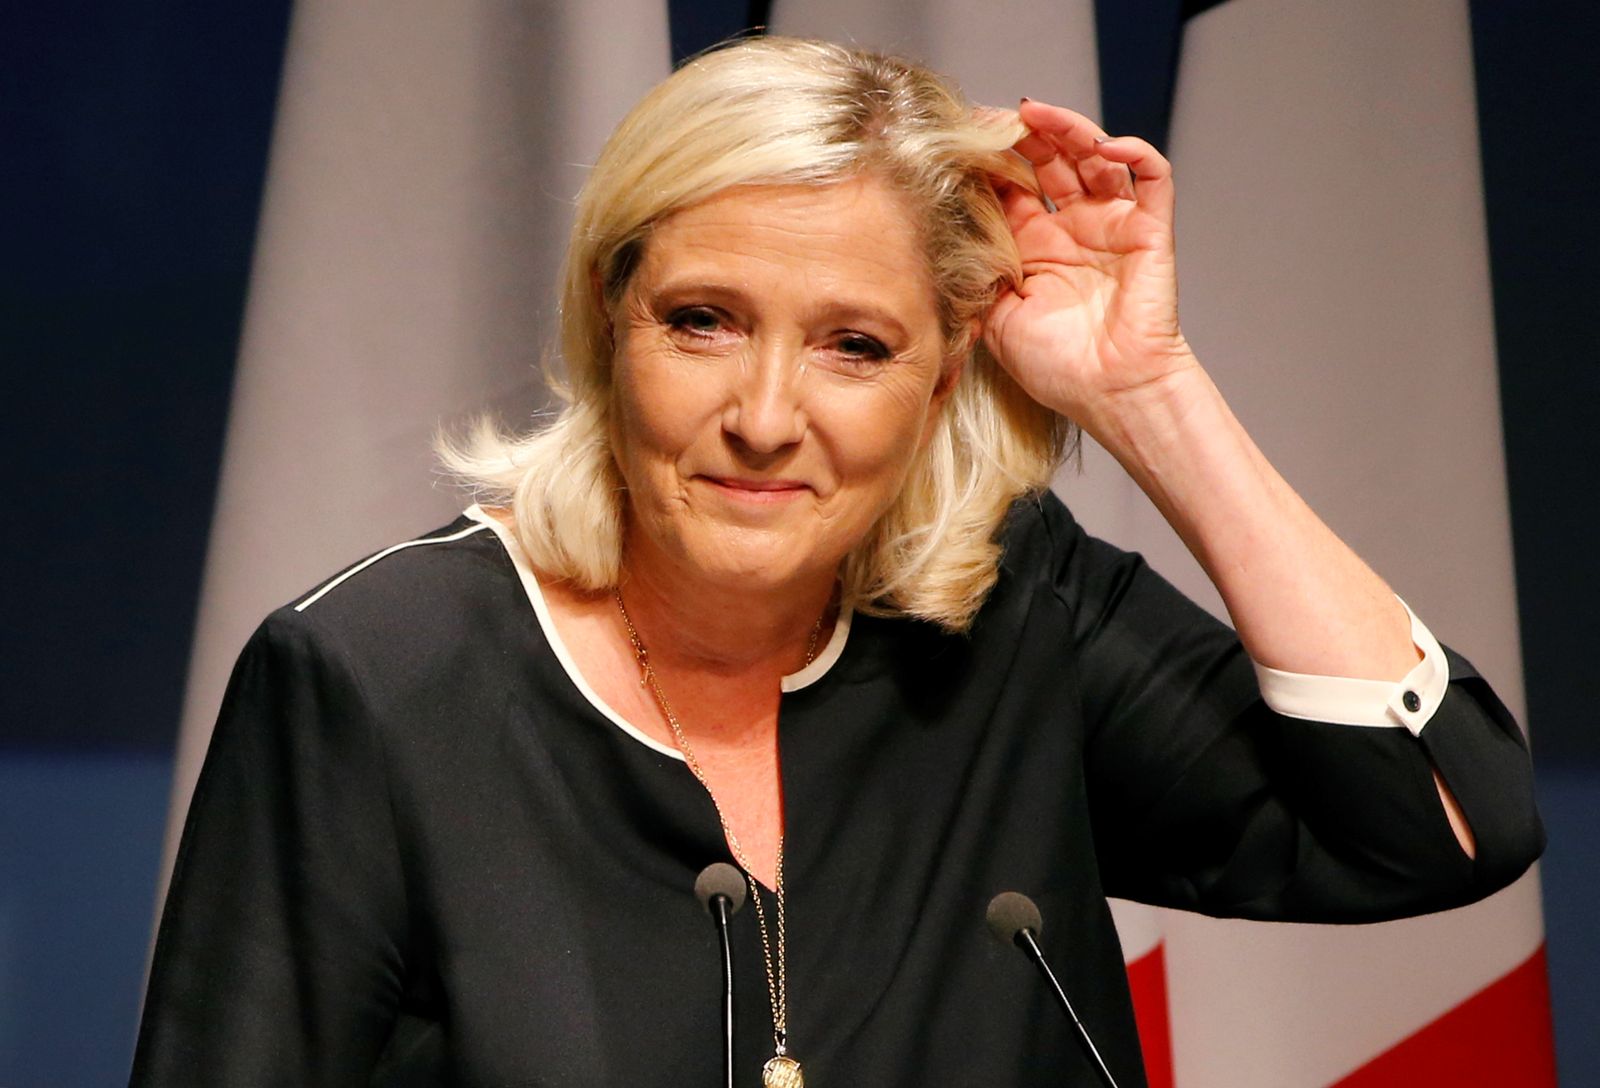 زعيمة اليمين المتطرف في فرنسا مارين لوبن قبل إلقائها خطاباً في فريجوس - 15 سبتمبر 2019 - REUTERS